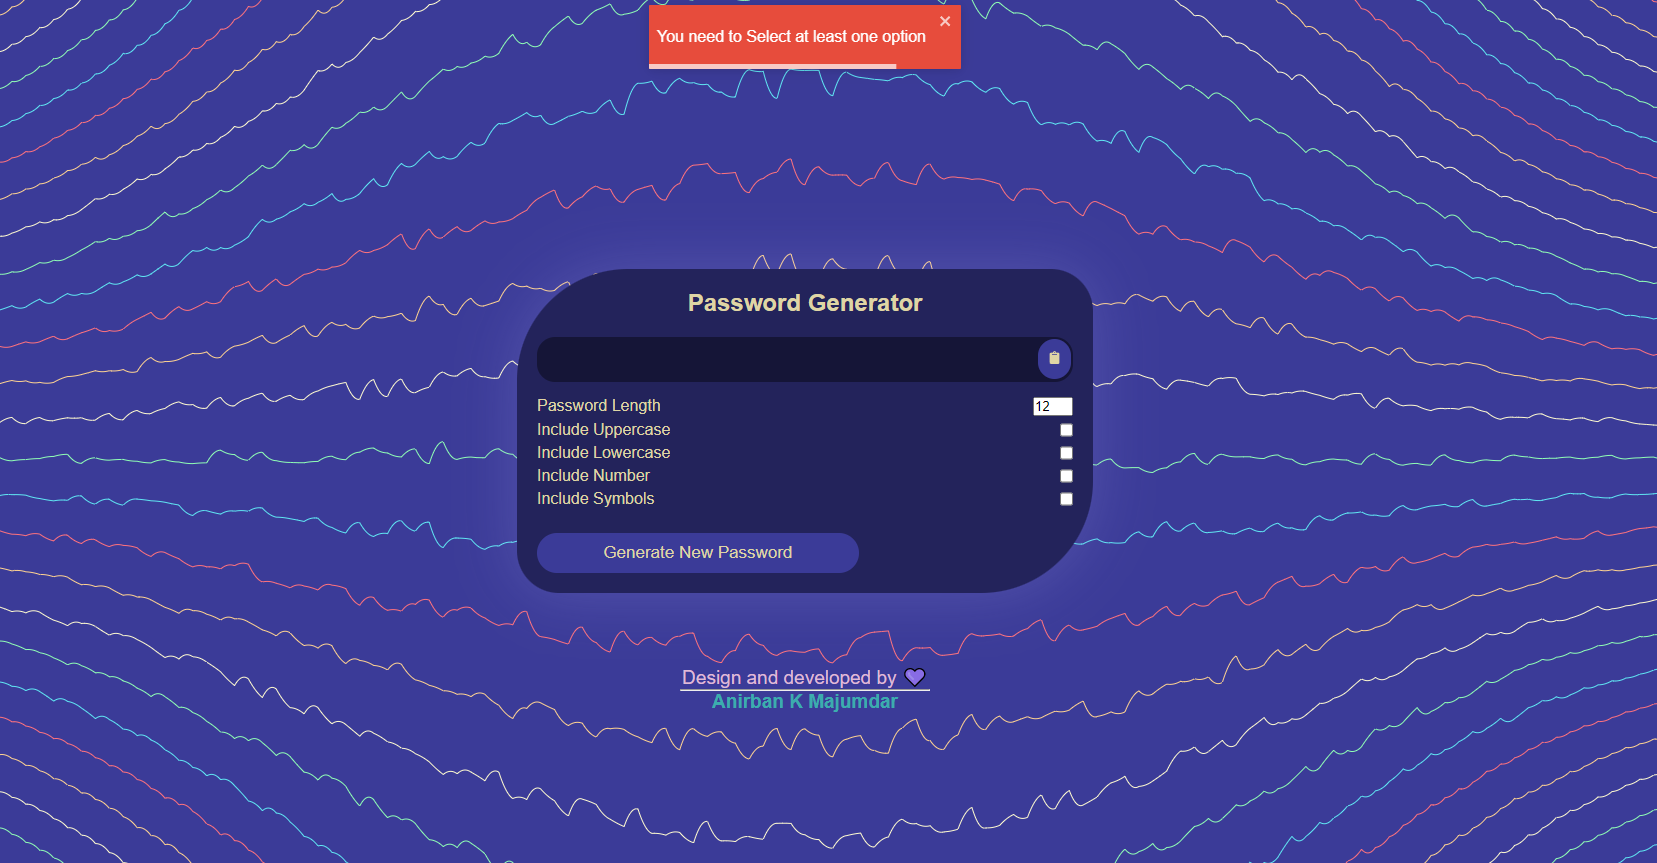 Password Gen error